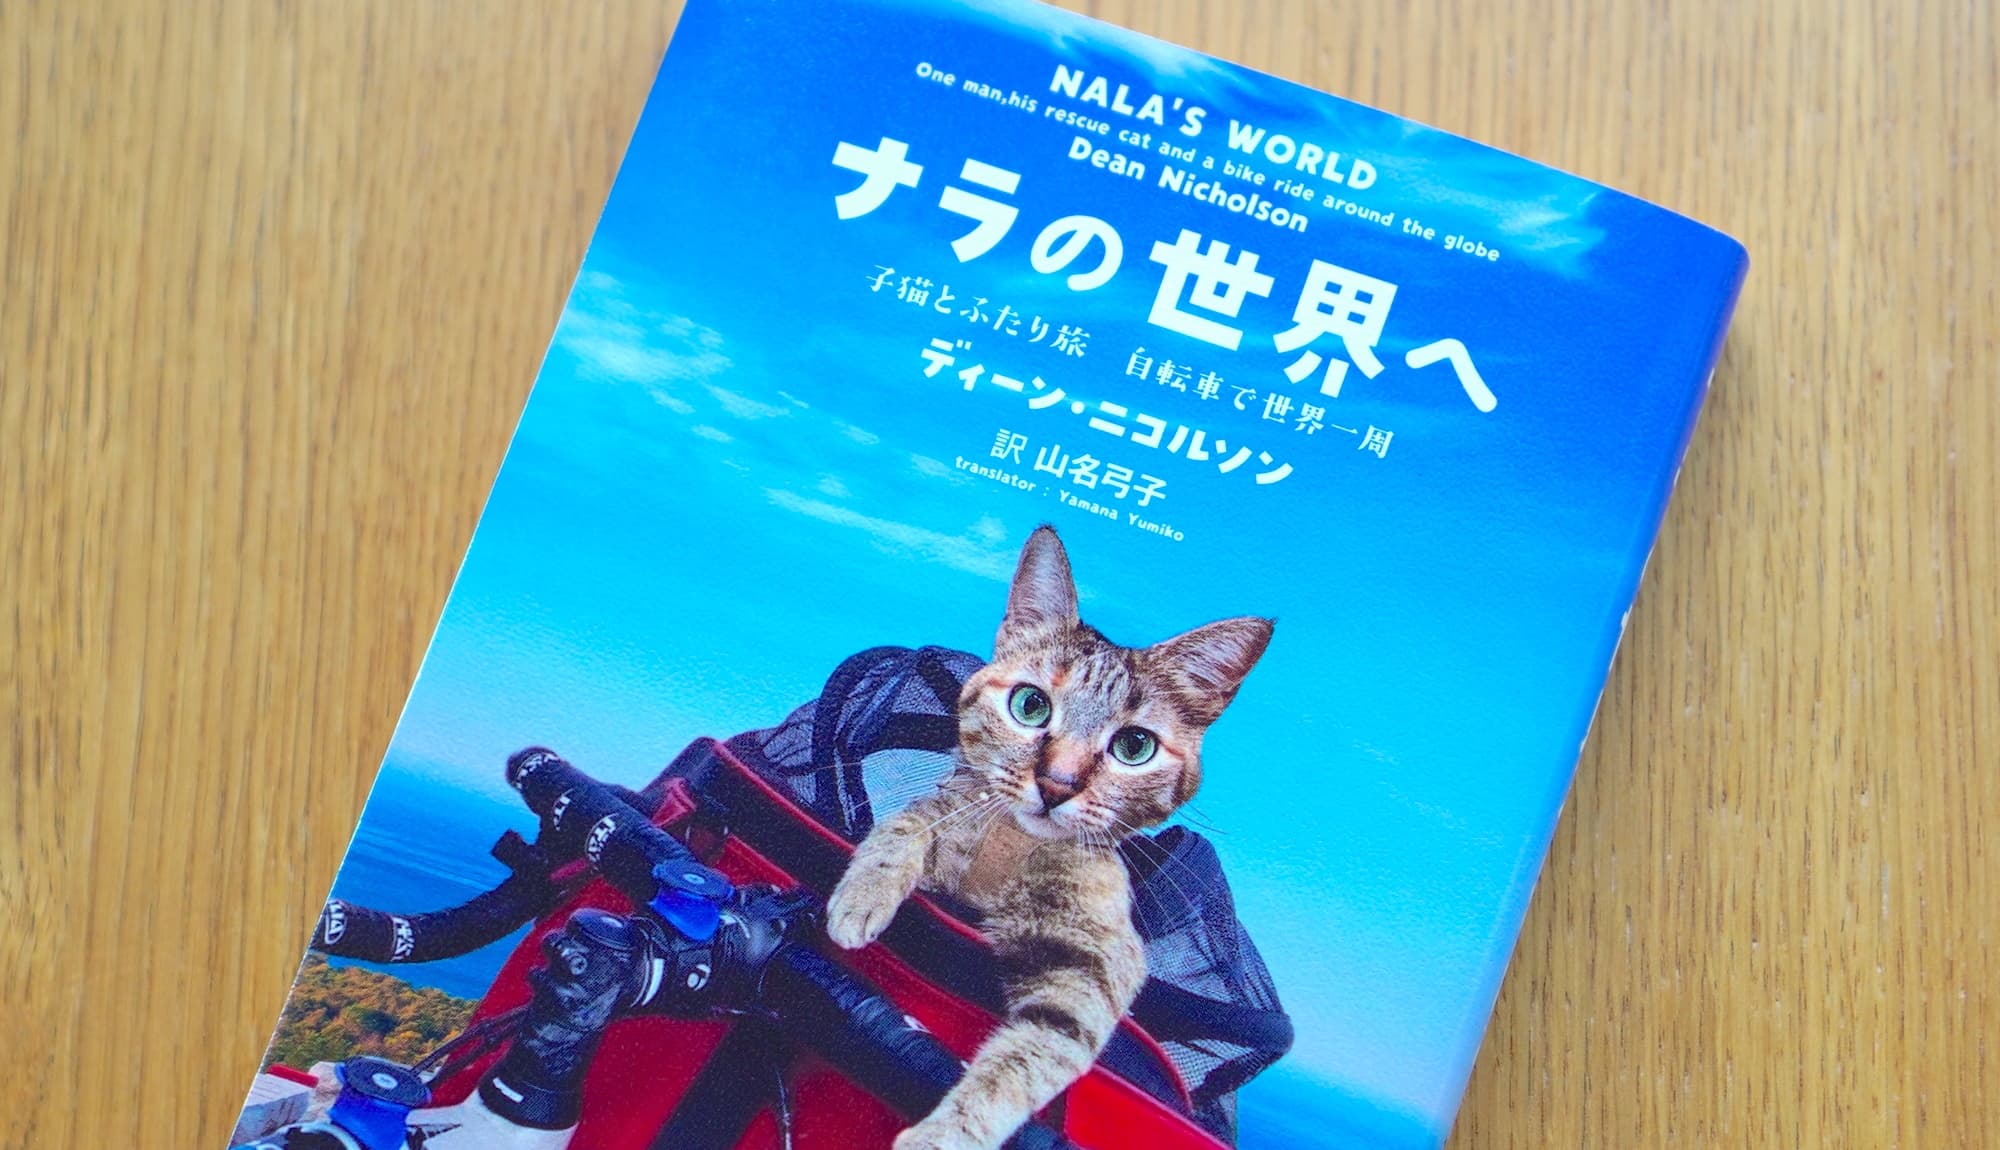 <span>サイクルおすすめBOOK　</span>どこへ行くにも二人は一緒！ 子猫と青年の自転車旅行「ナラの世界へ 子猫とふたり旅 自転車で世界一周」